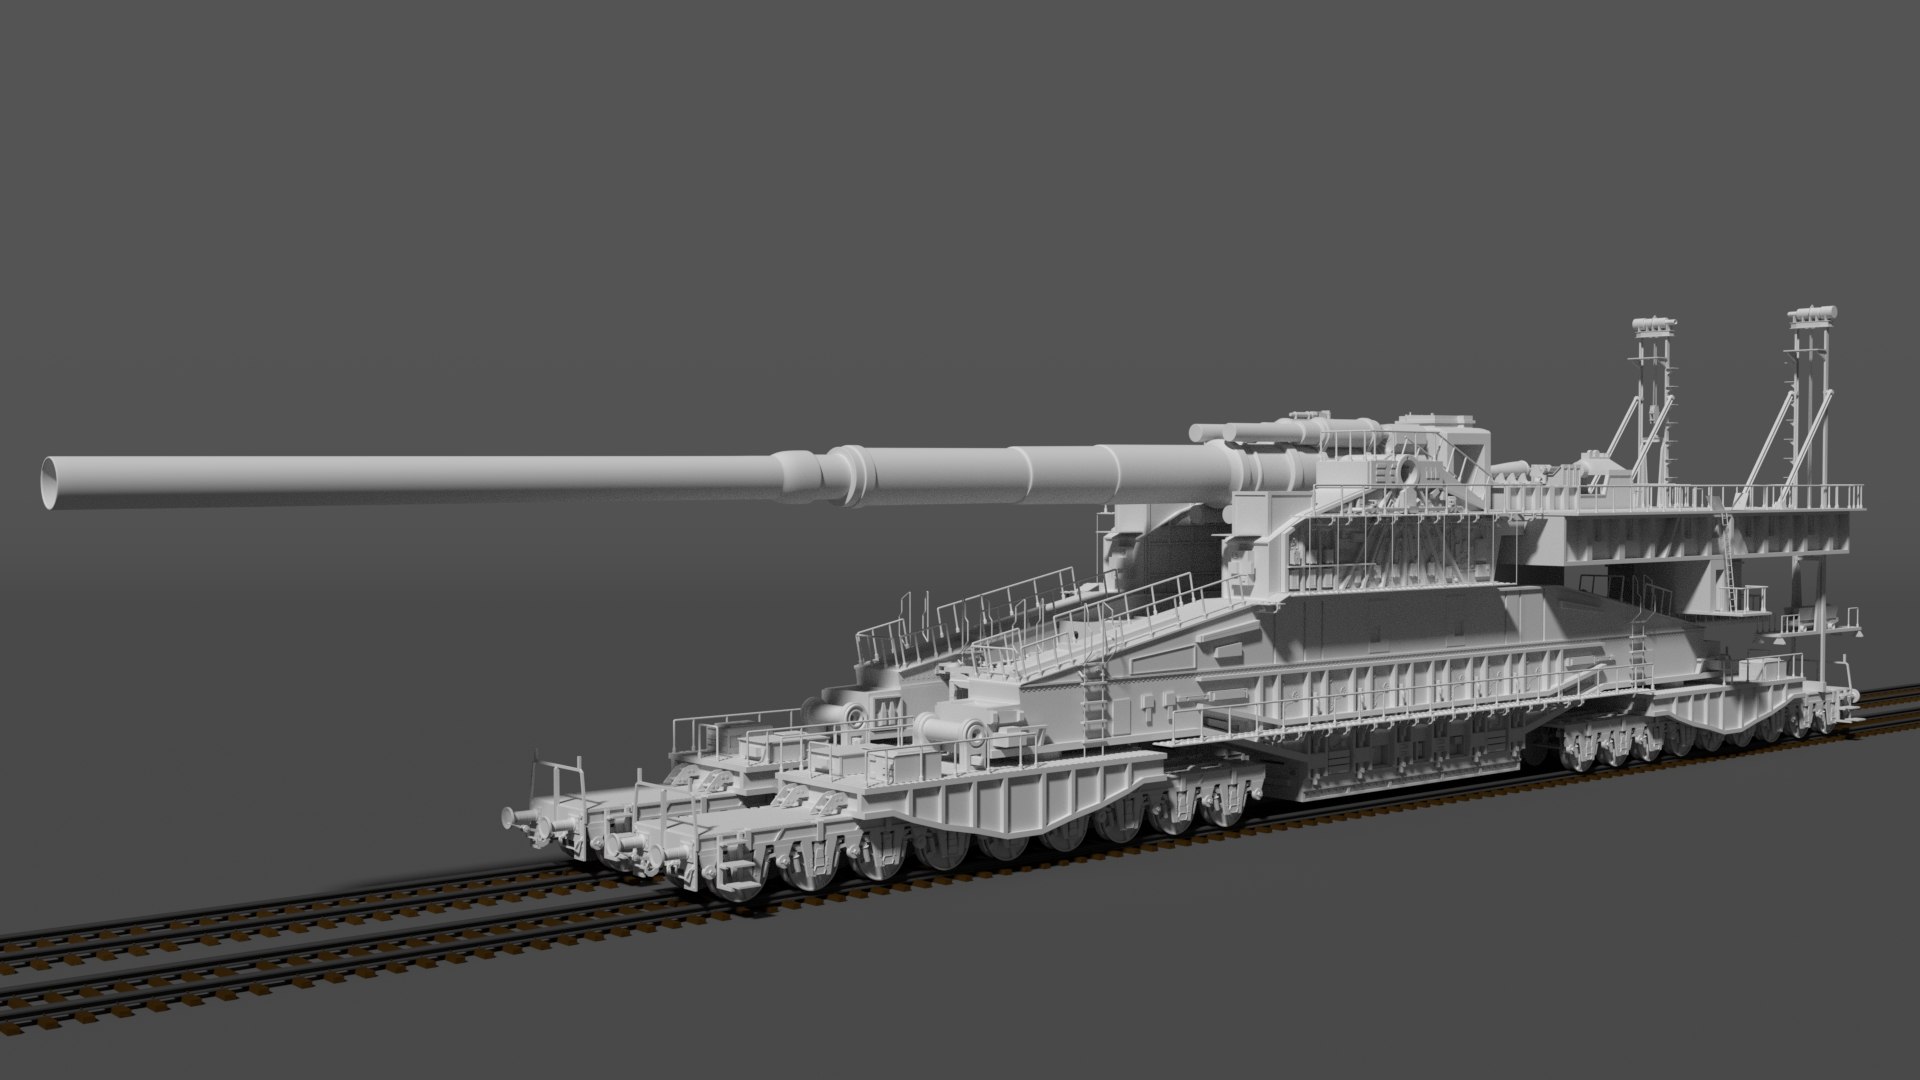 Schwerer Gustav 800mm Railroad Gun 3D Model $10 - .obj .3ds .fbx - Free3D